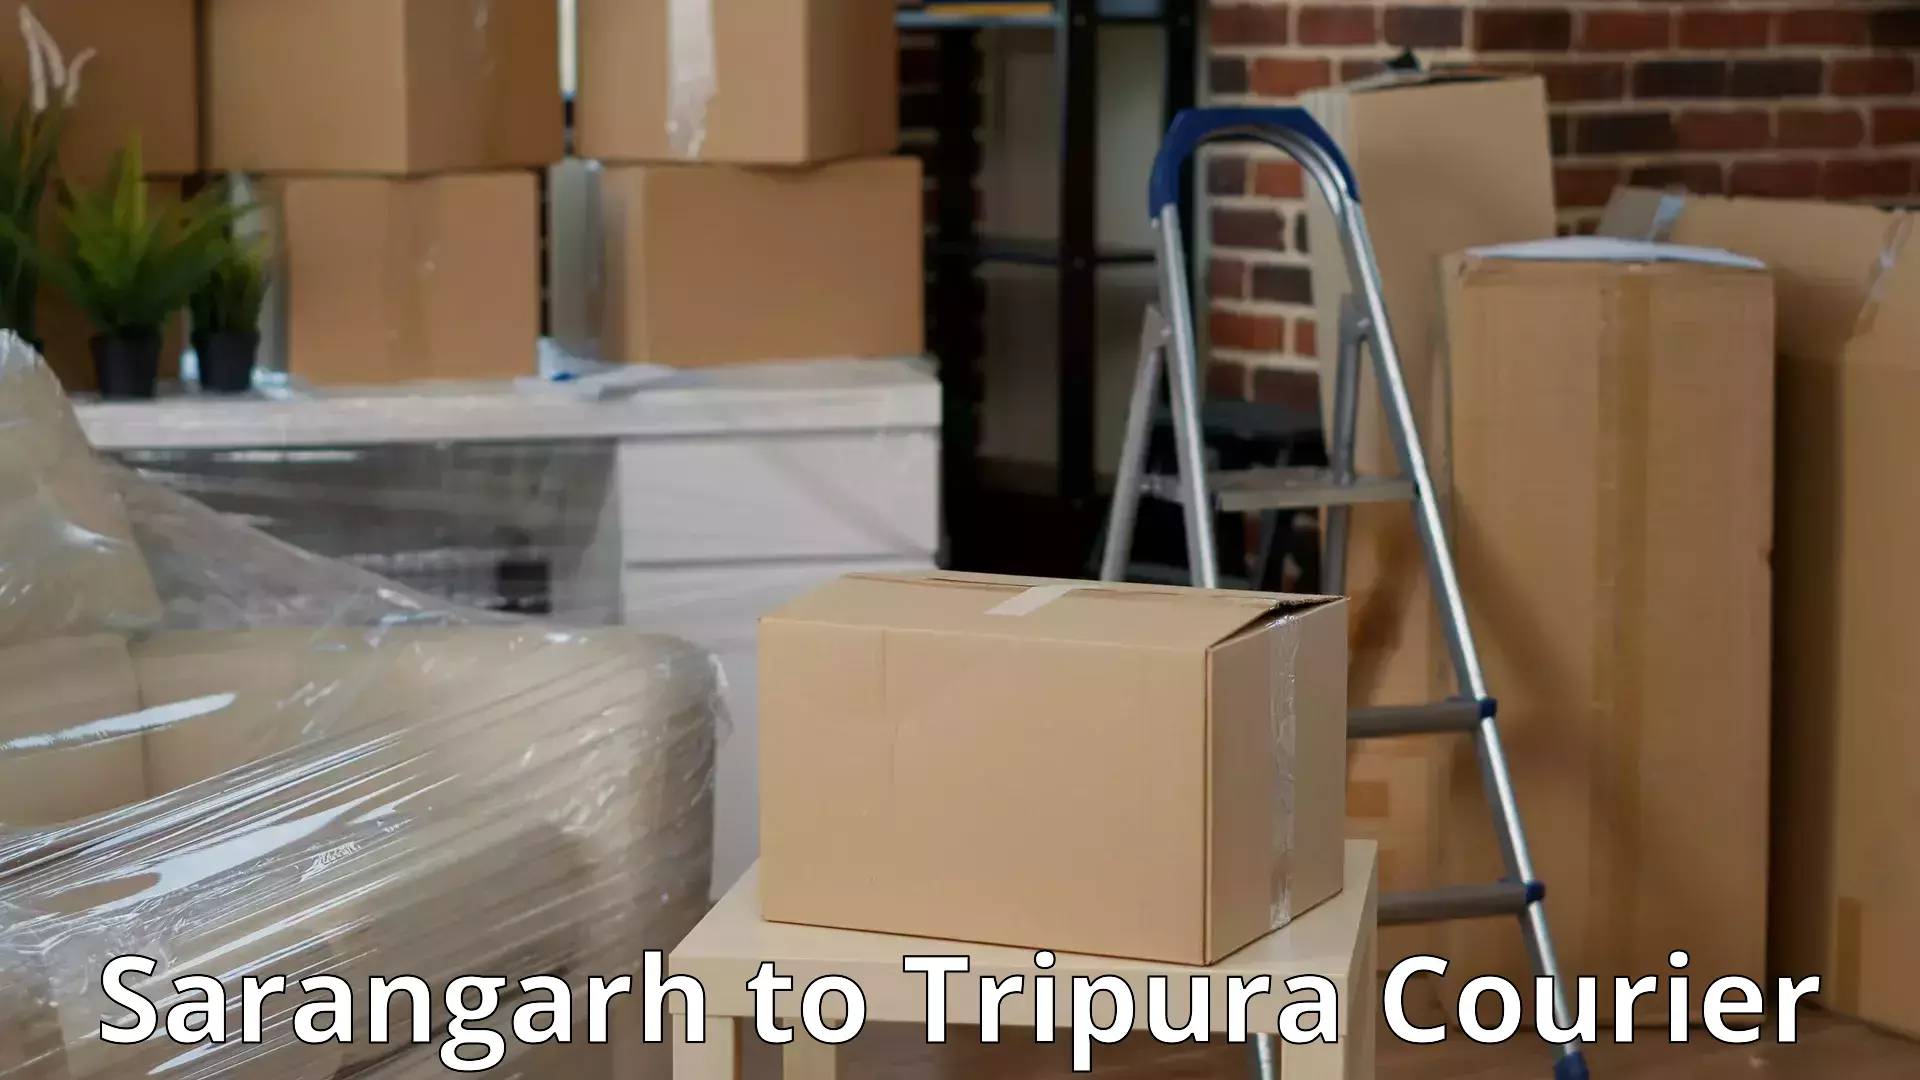 Professional movers and packers Sarangarh to Bishalgarh